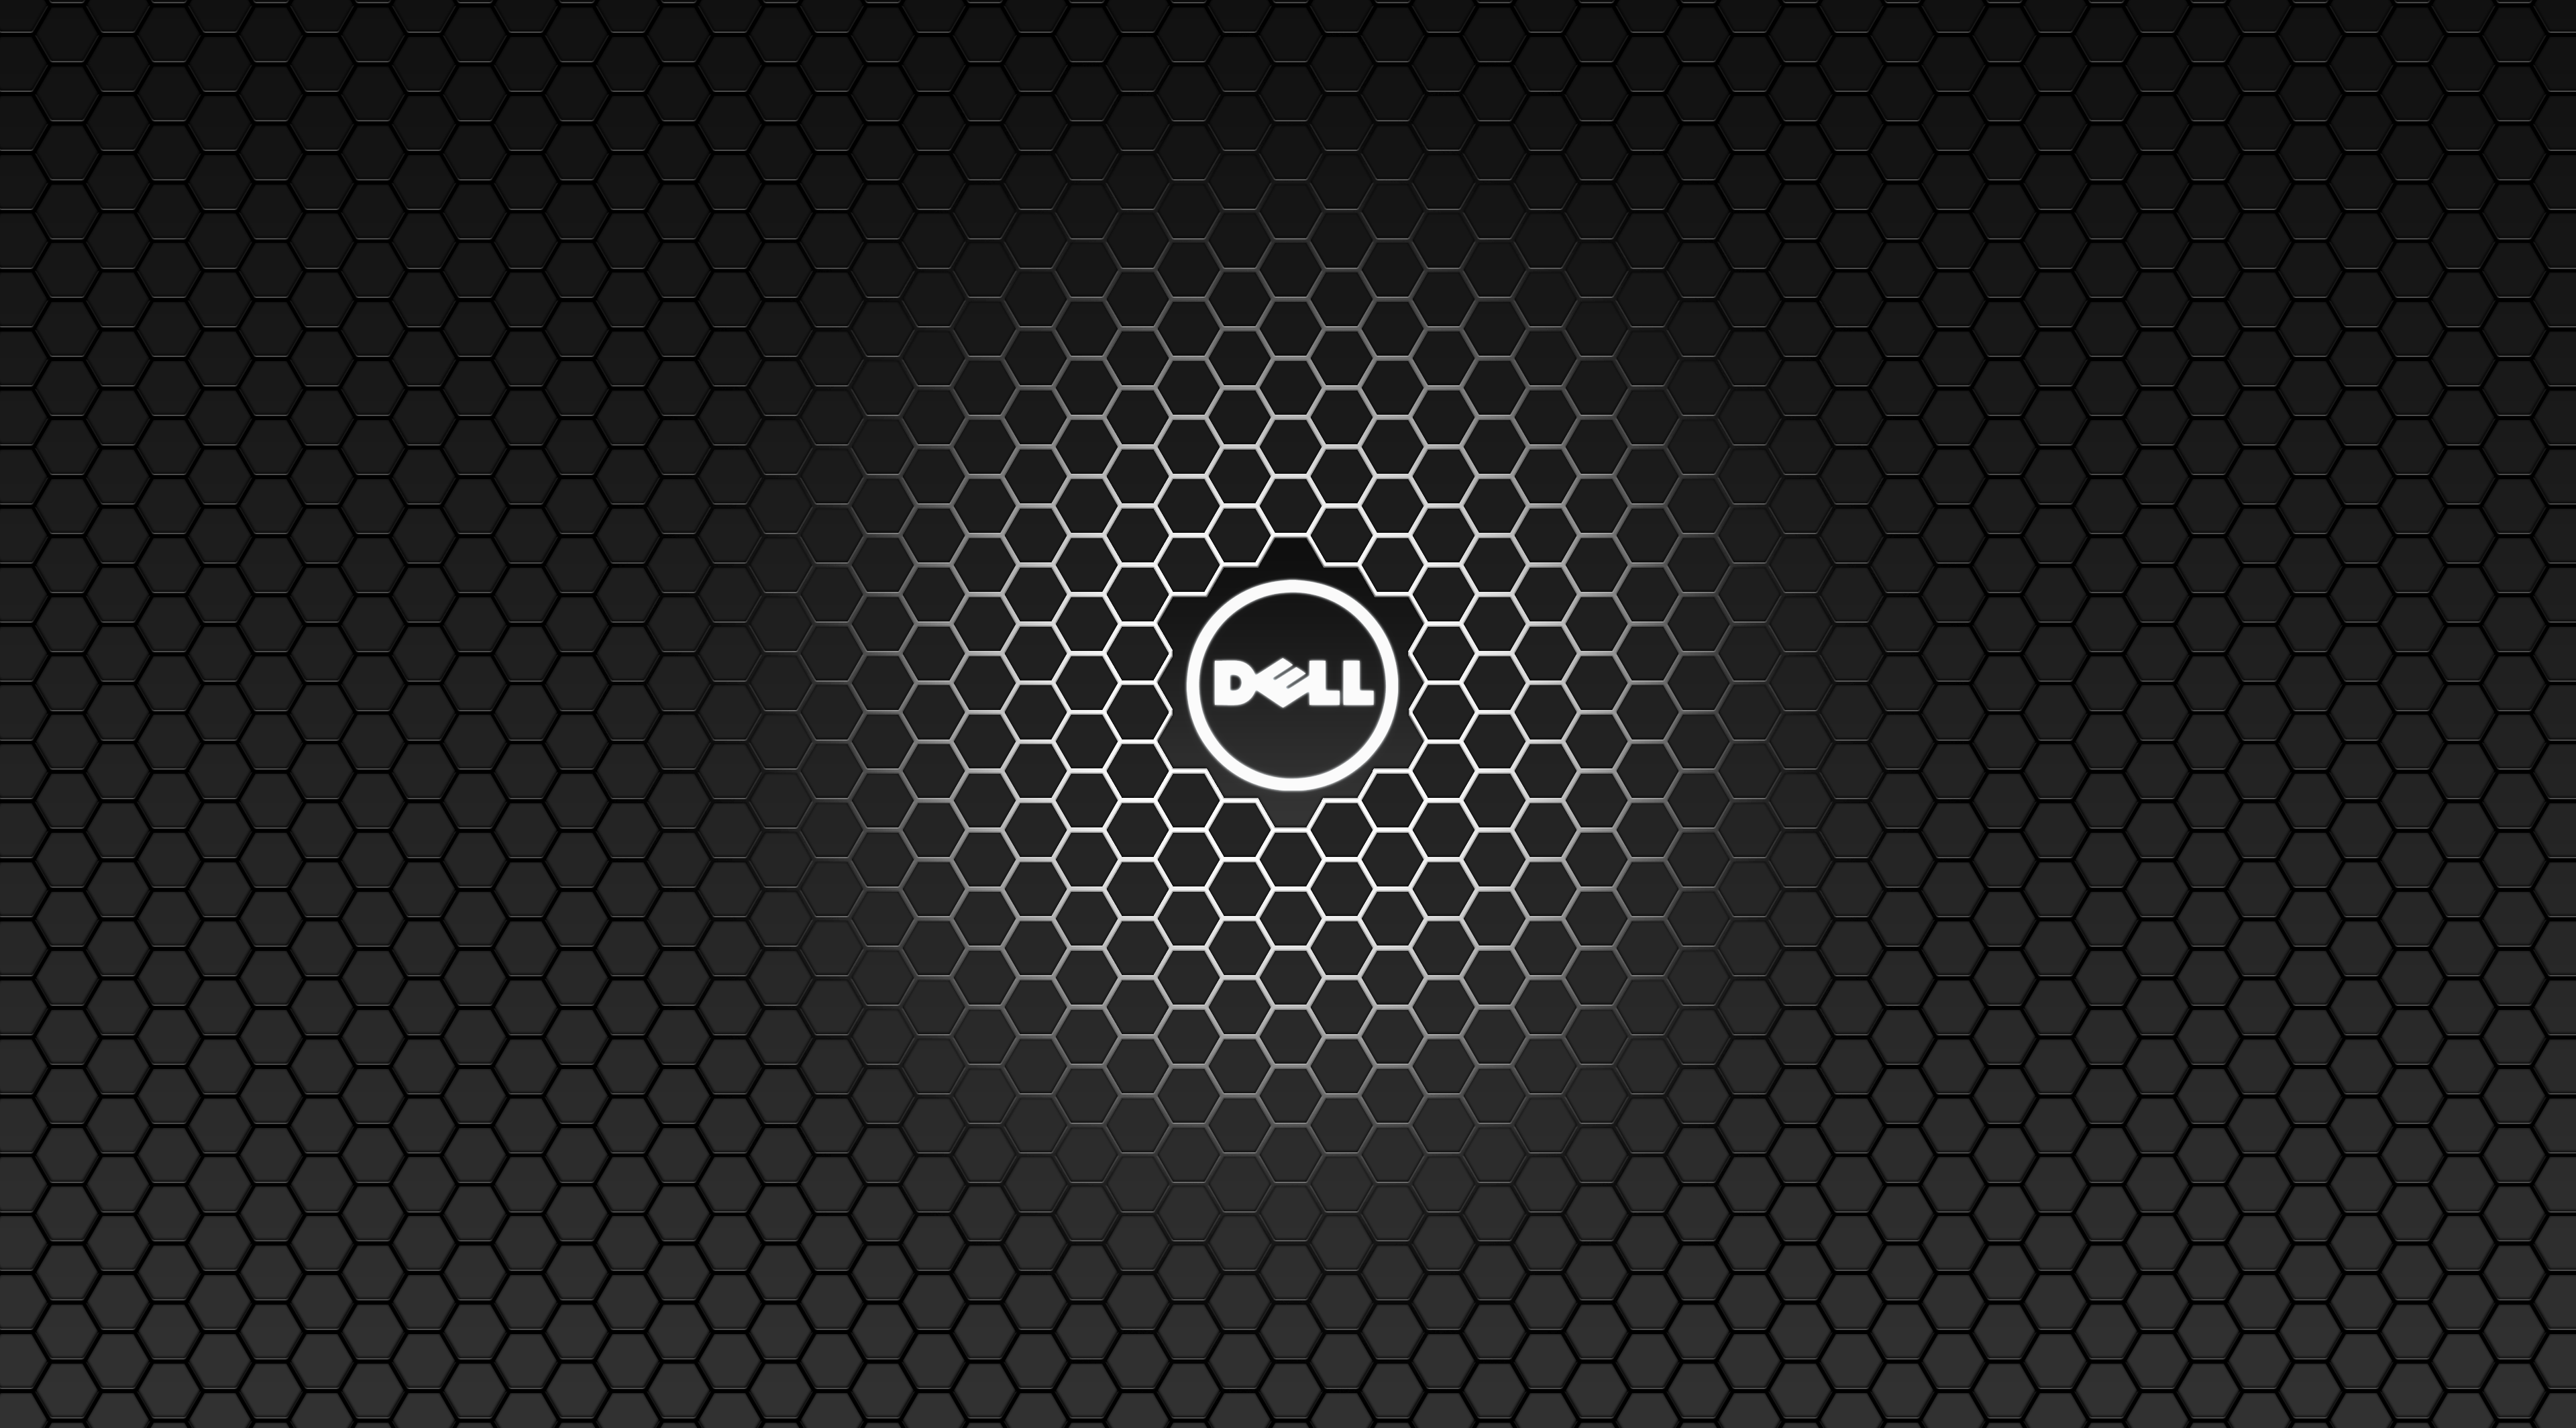  Dell Hintergrundbild 3840x2128. Dell HD Wallpaper und Hintergründe